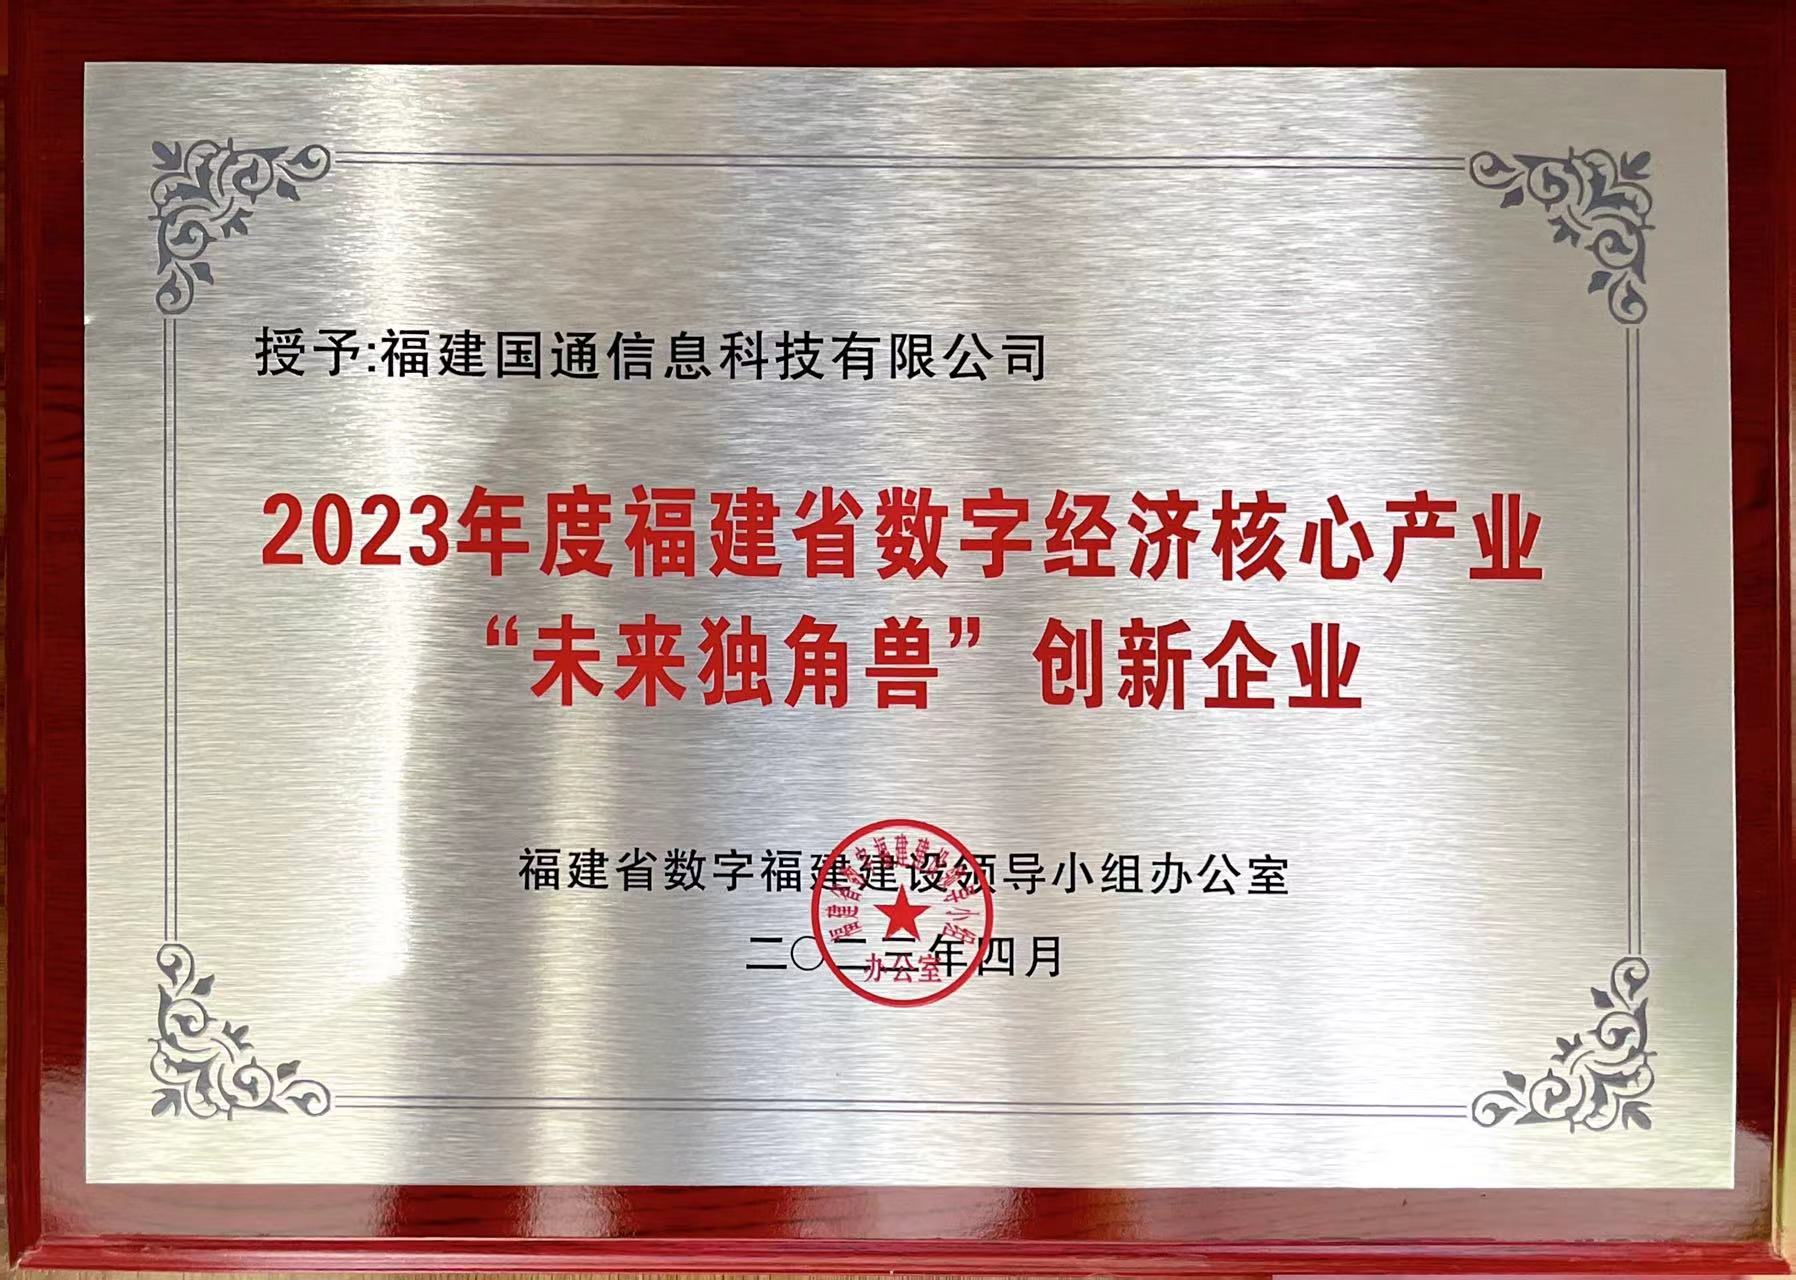 2023年度福建省数字经济核心产业“未来独角兽”创新企业